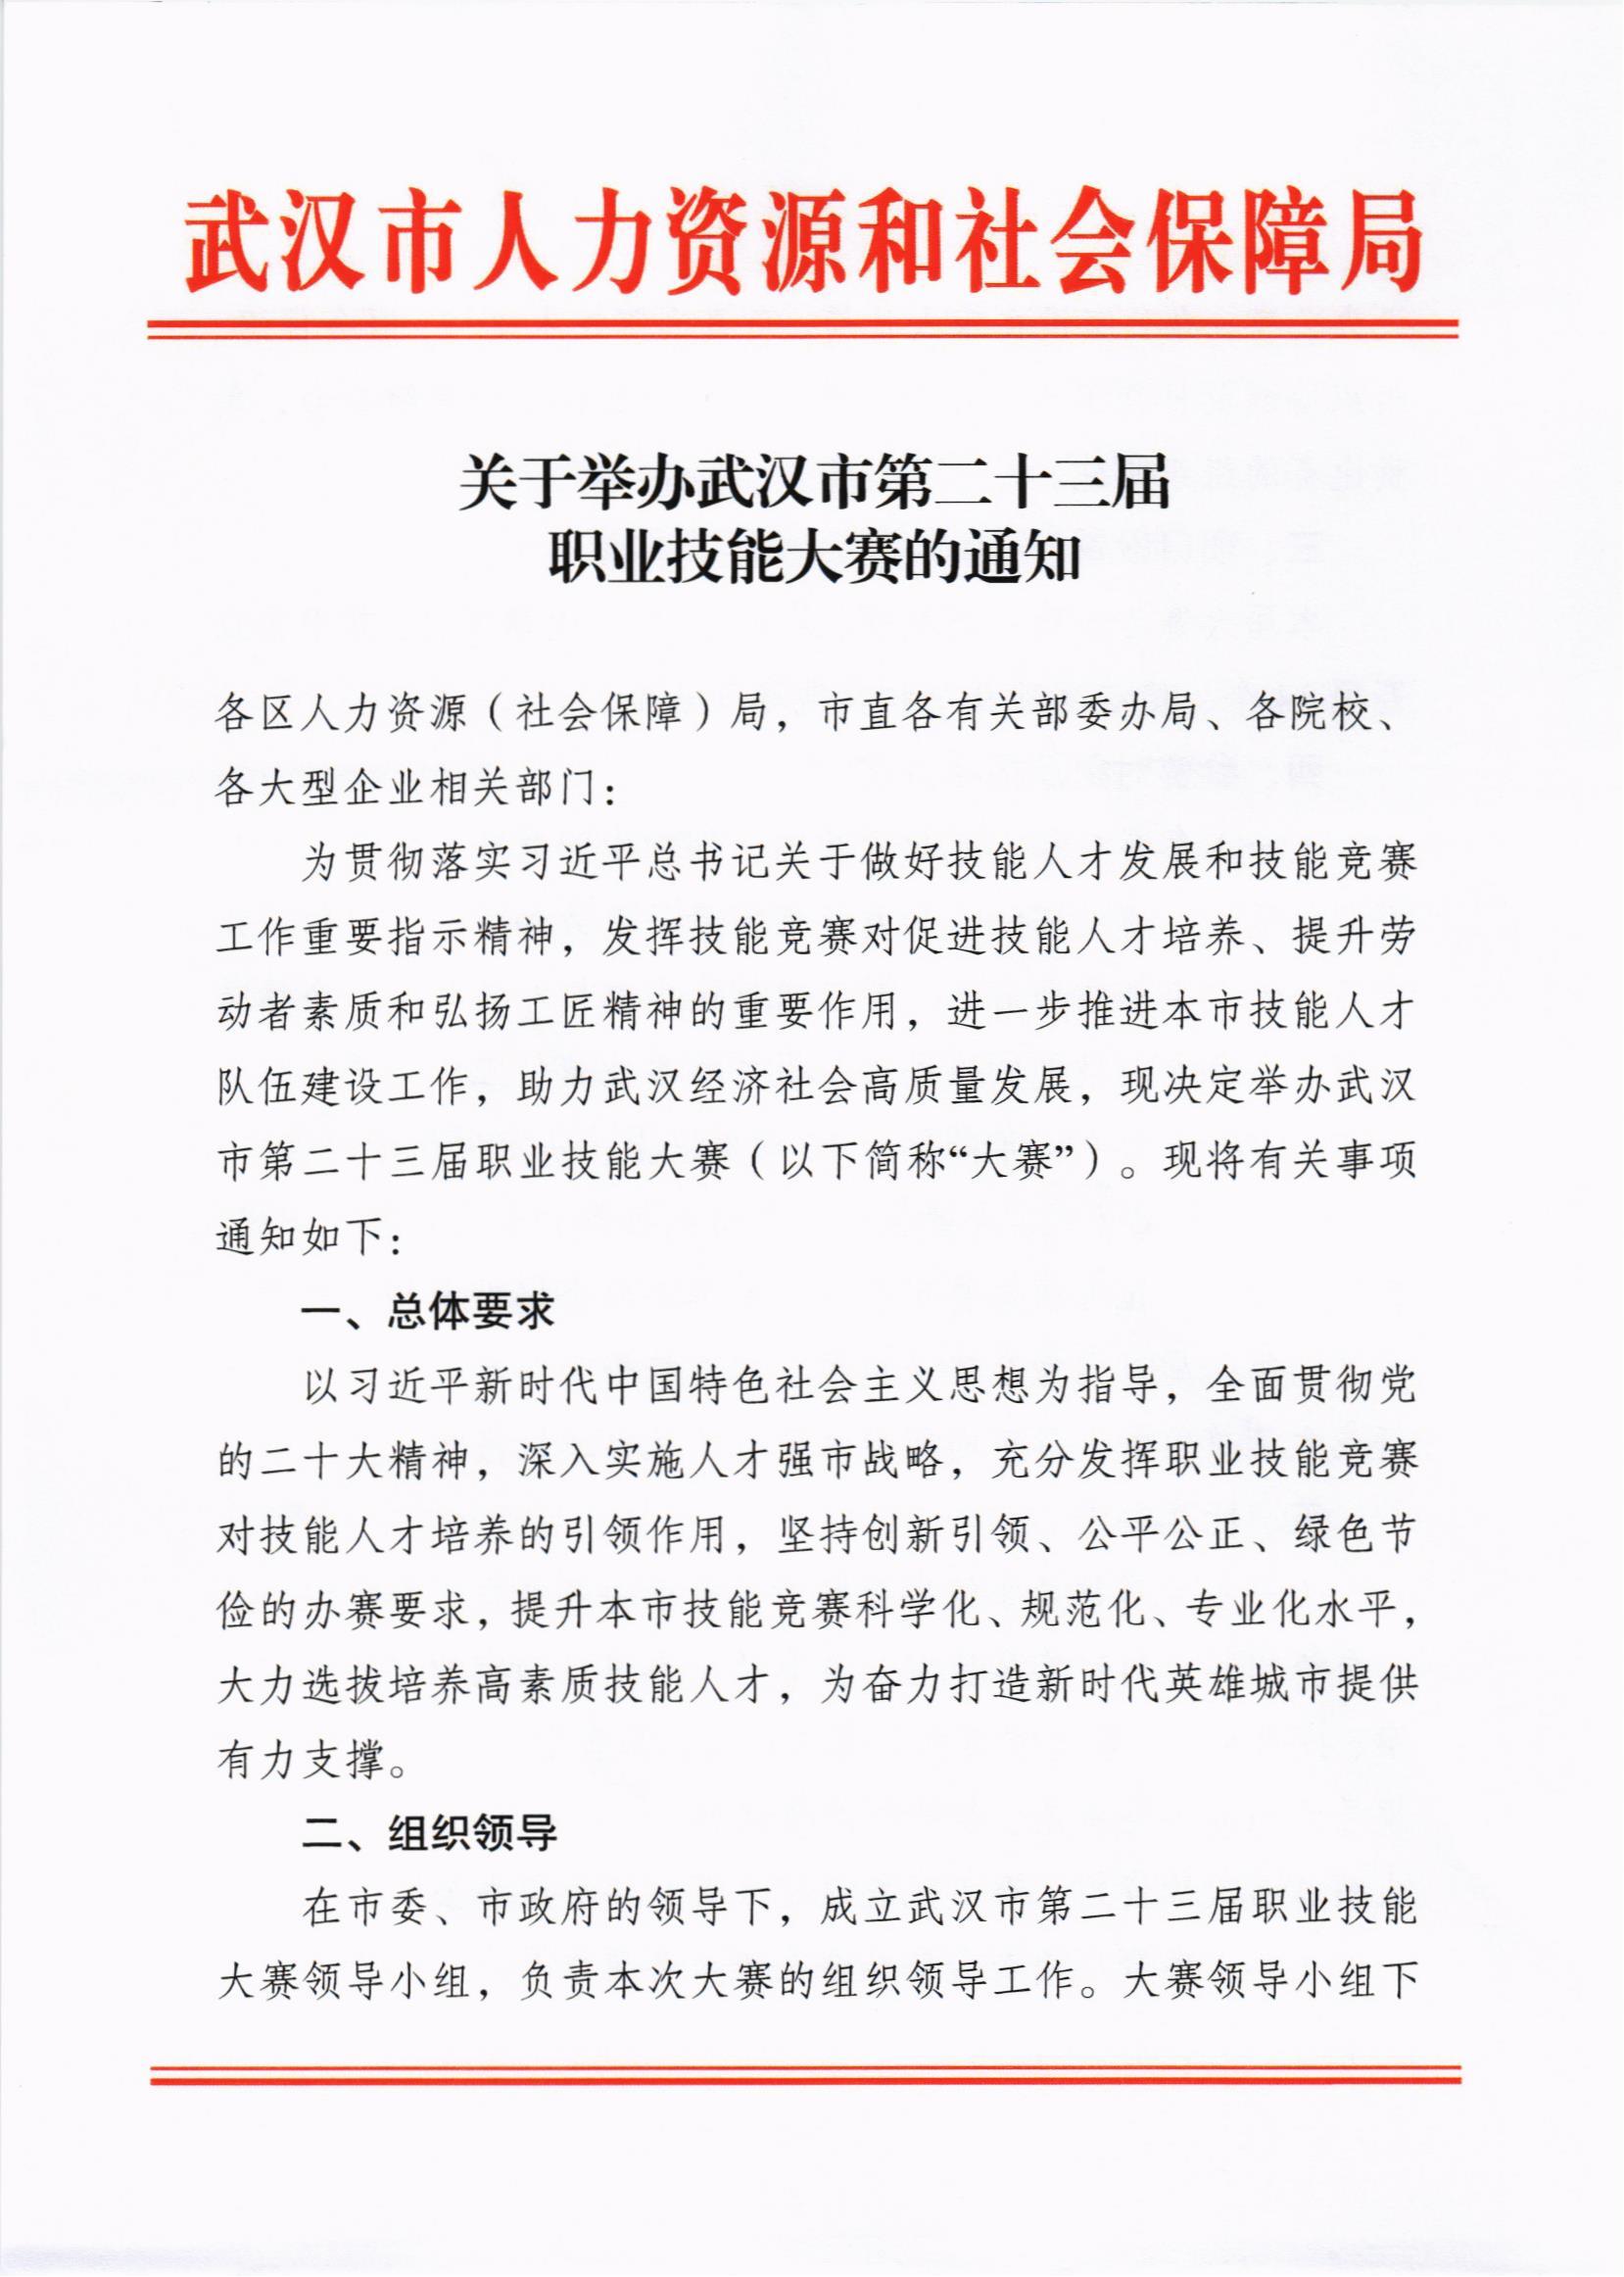 关于举办武汉市第二十三届职业技能大赛的通知